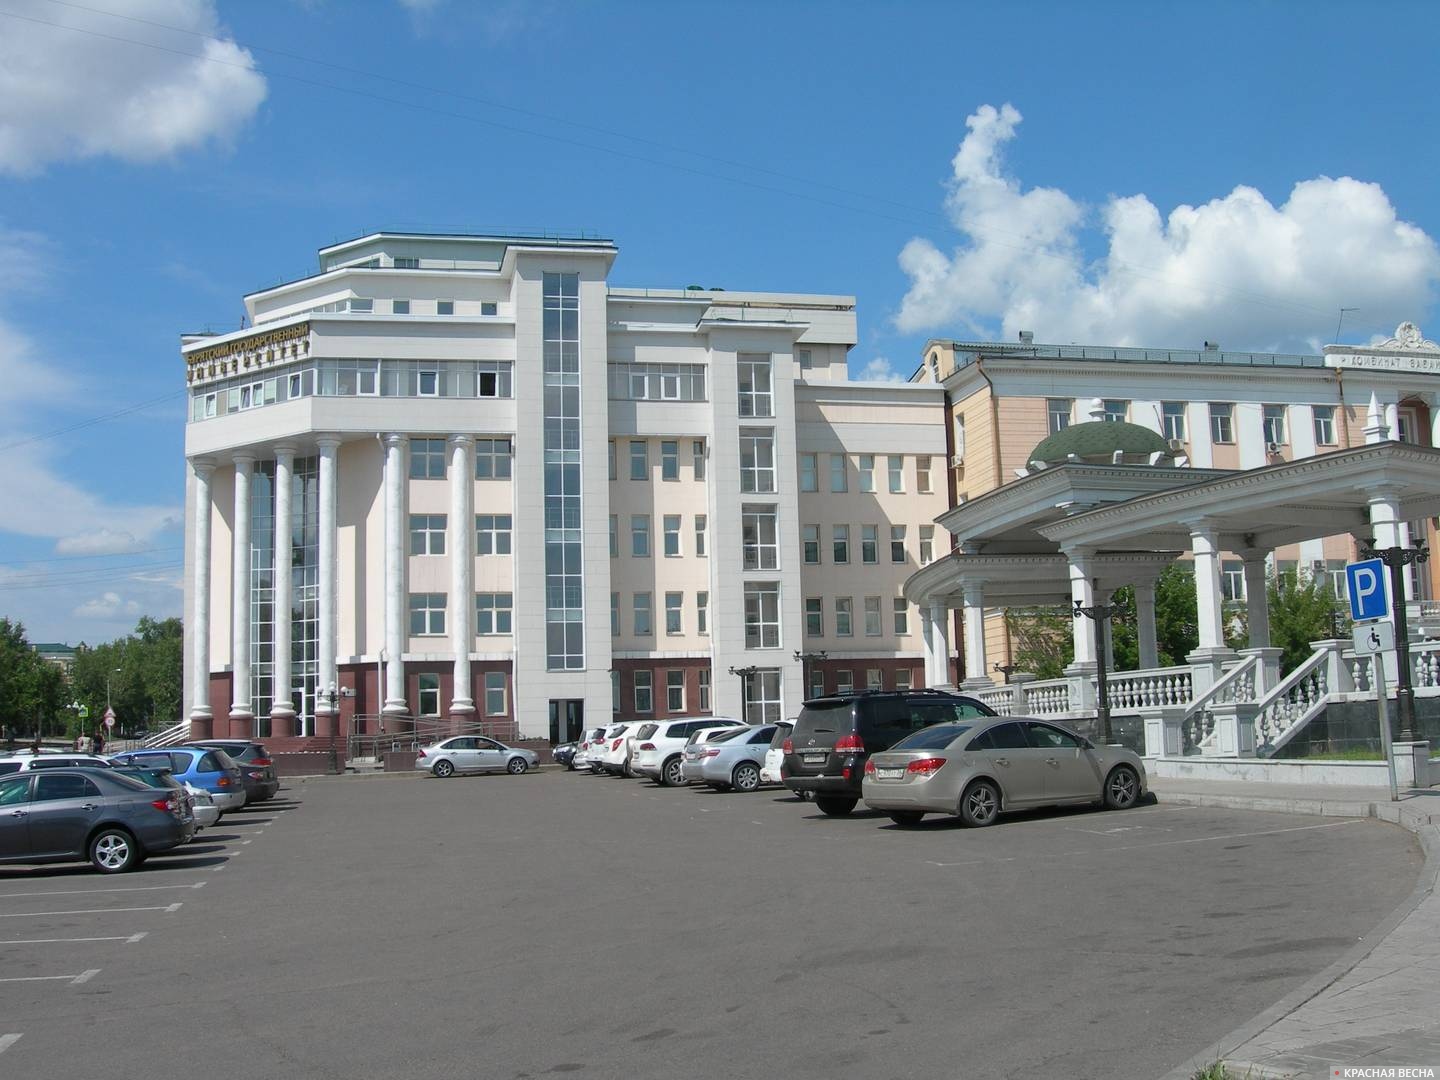 Бурятский государственный университет. Улан-Удэ